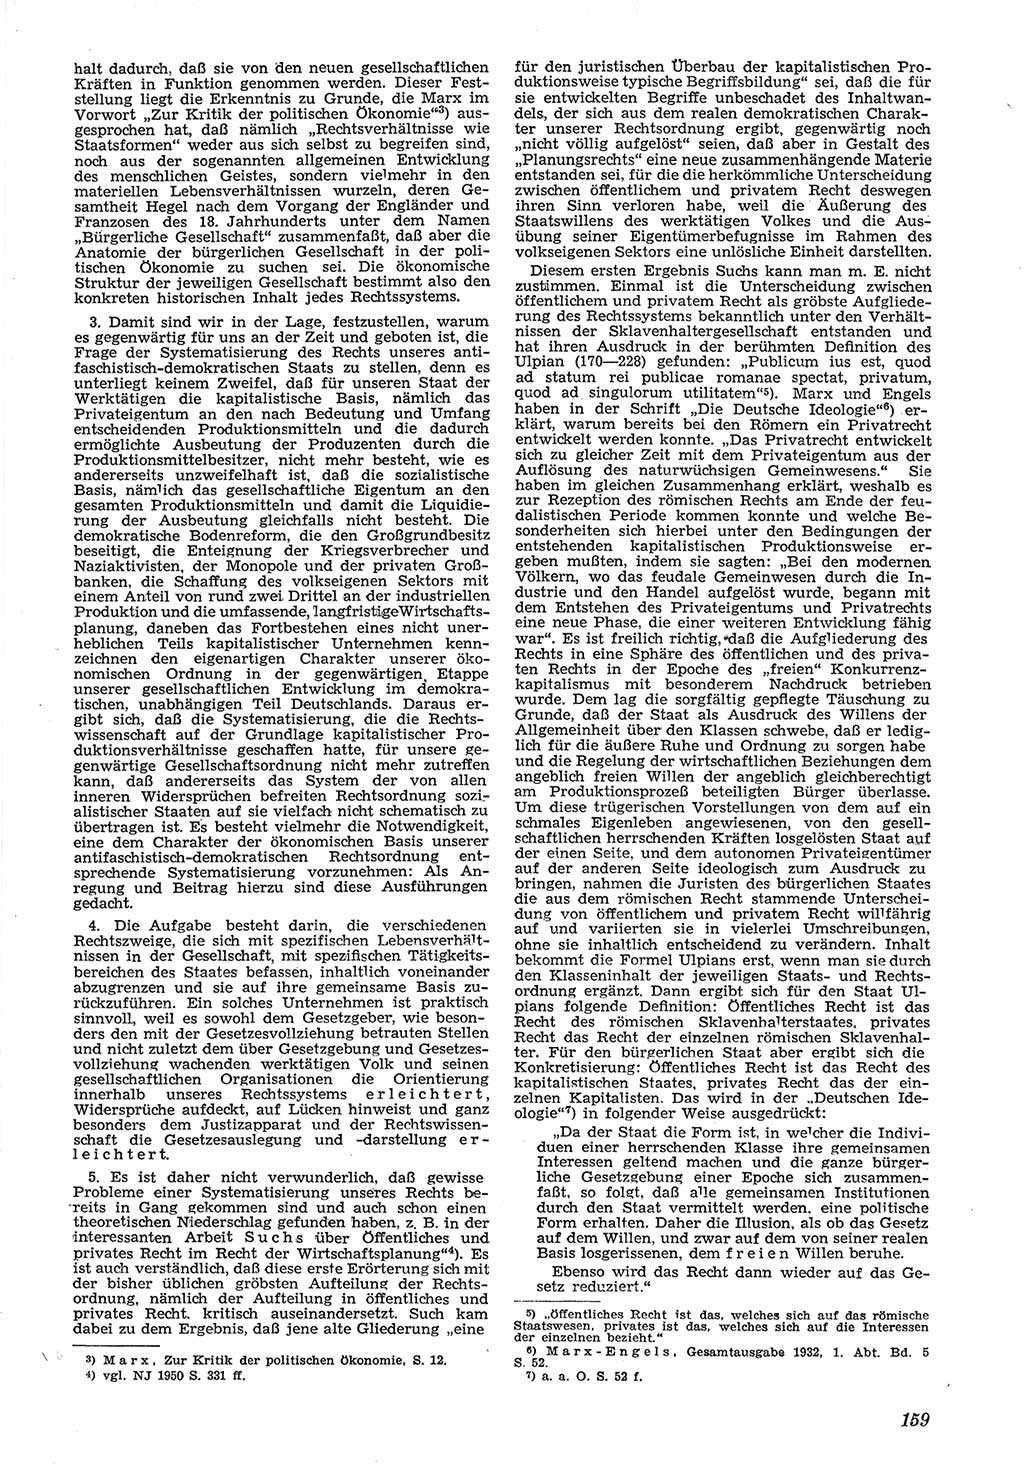 Neue Justiz (NJ), Zeitschrift für Recht und Rechtswissenschaft [Deutsche Demokratische Republik (DDR)], 5. Jahrgang 1951, Seite 159 (NJ DDR 1951, S. 159)